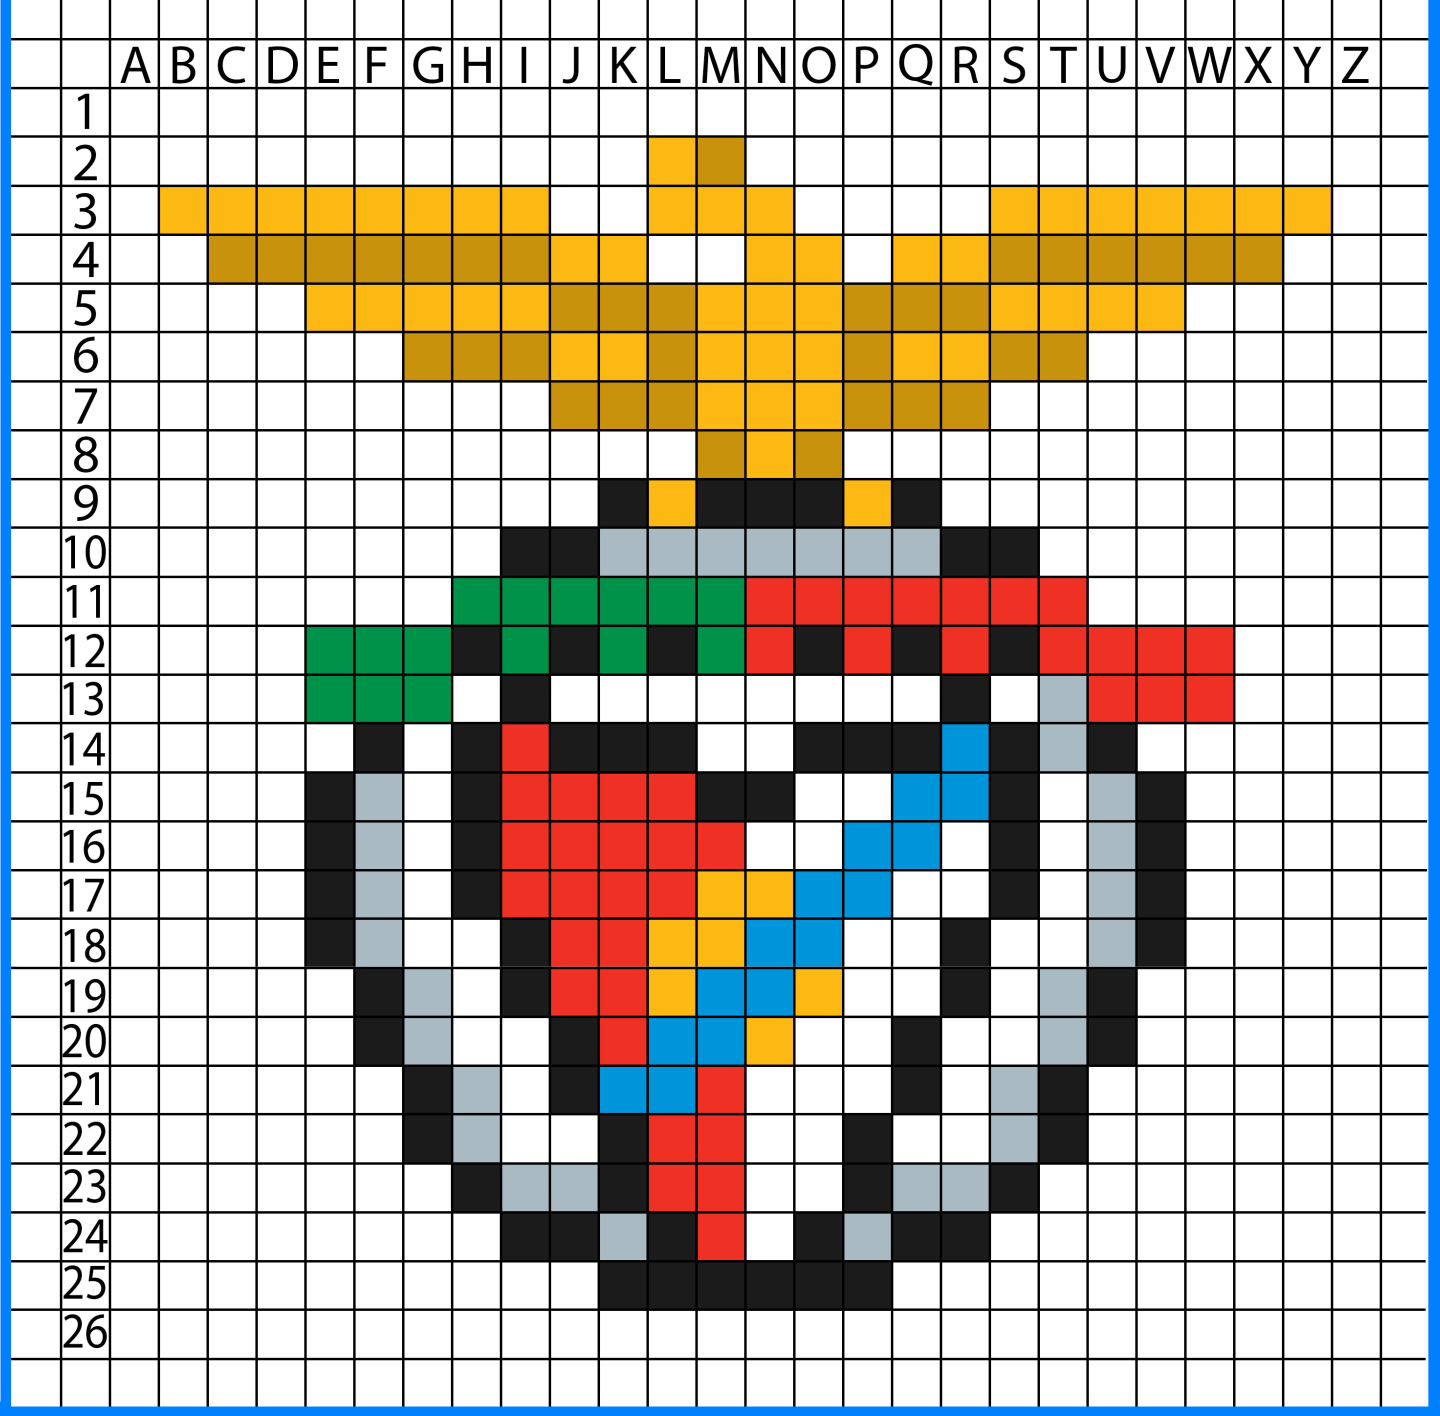 SL Benfica Pixel art